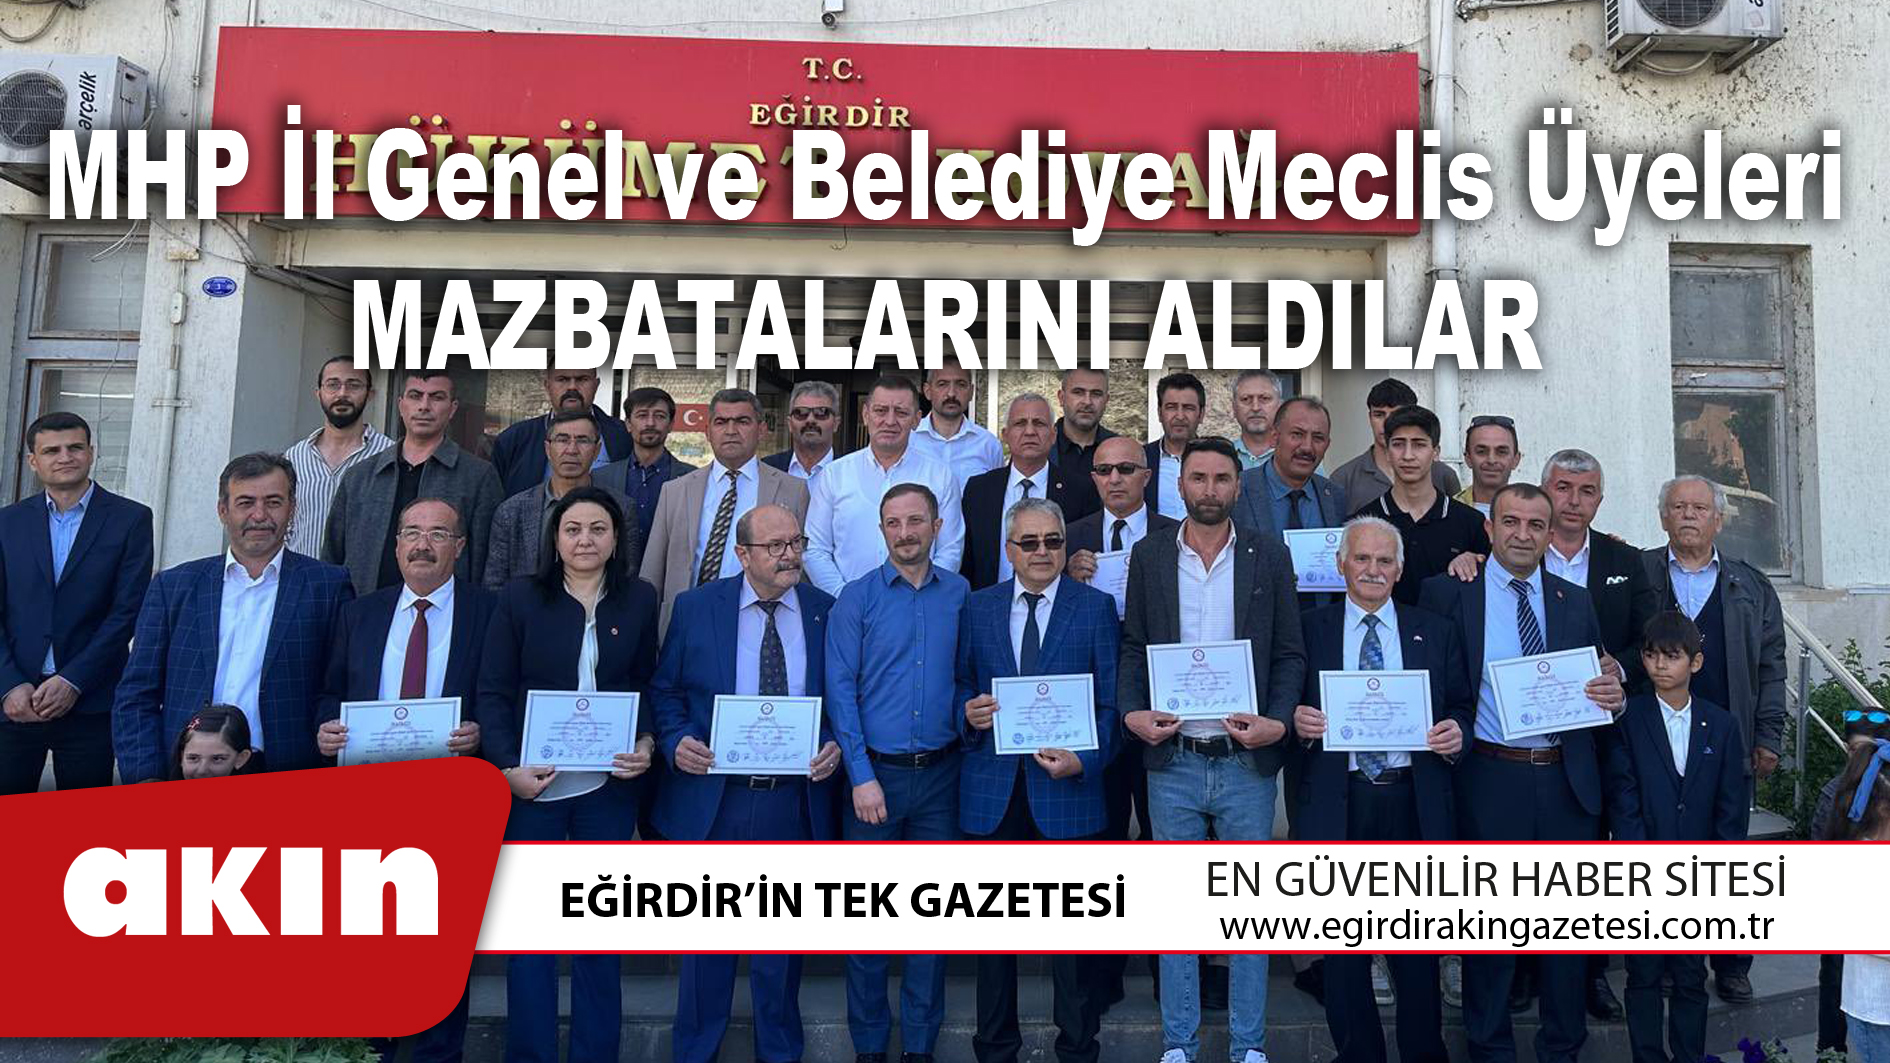 MHP İl Genel ve Belediye Meclis Üyeleri mazbatalarını aldı